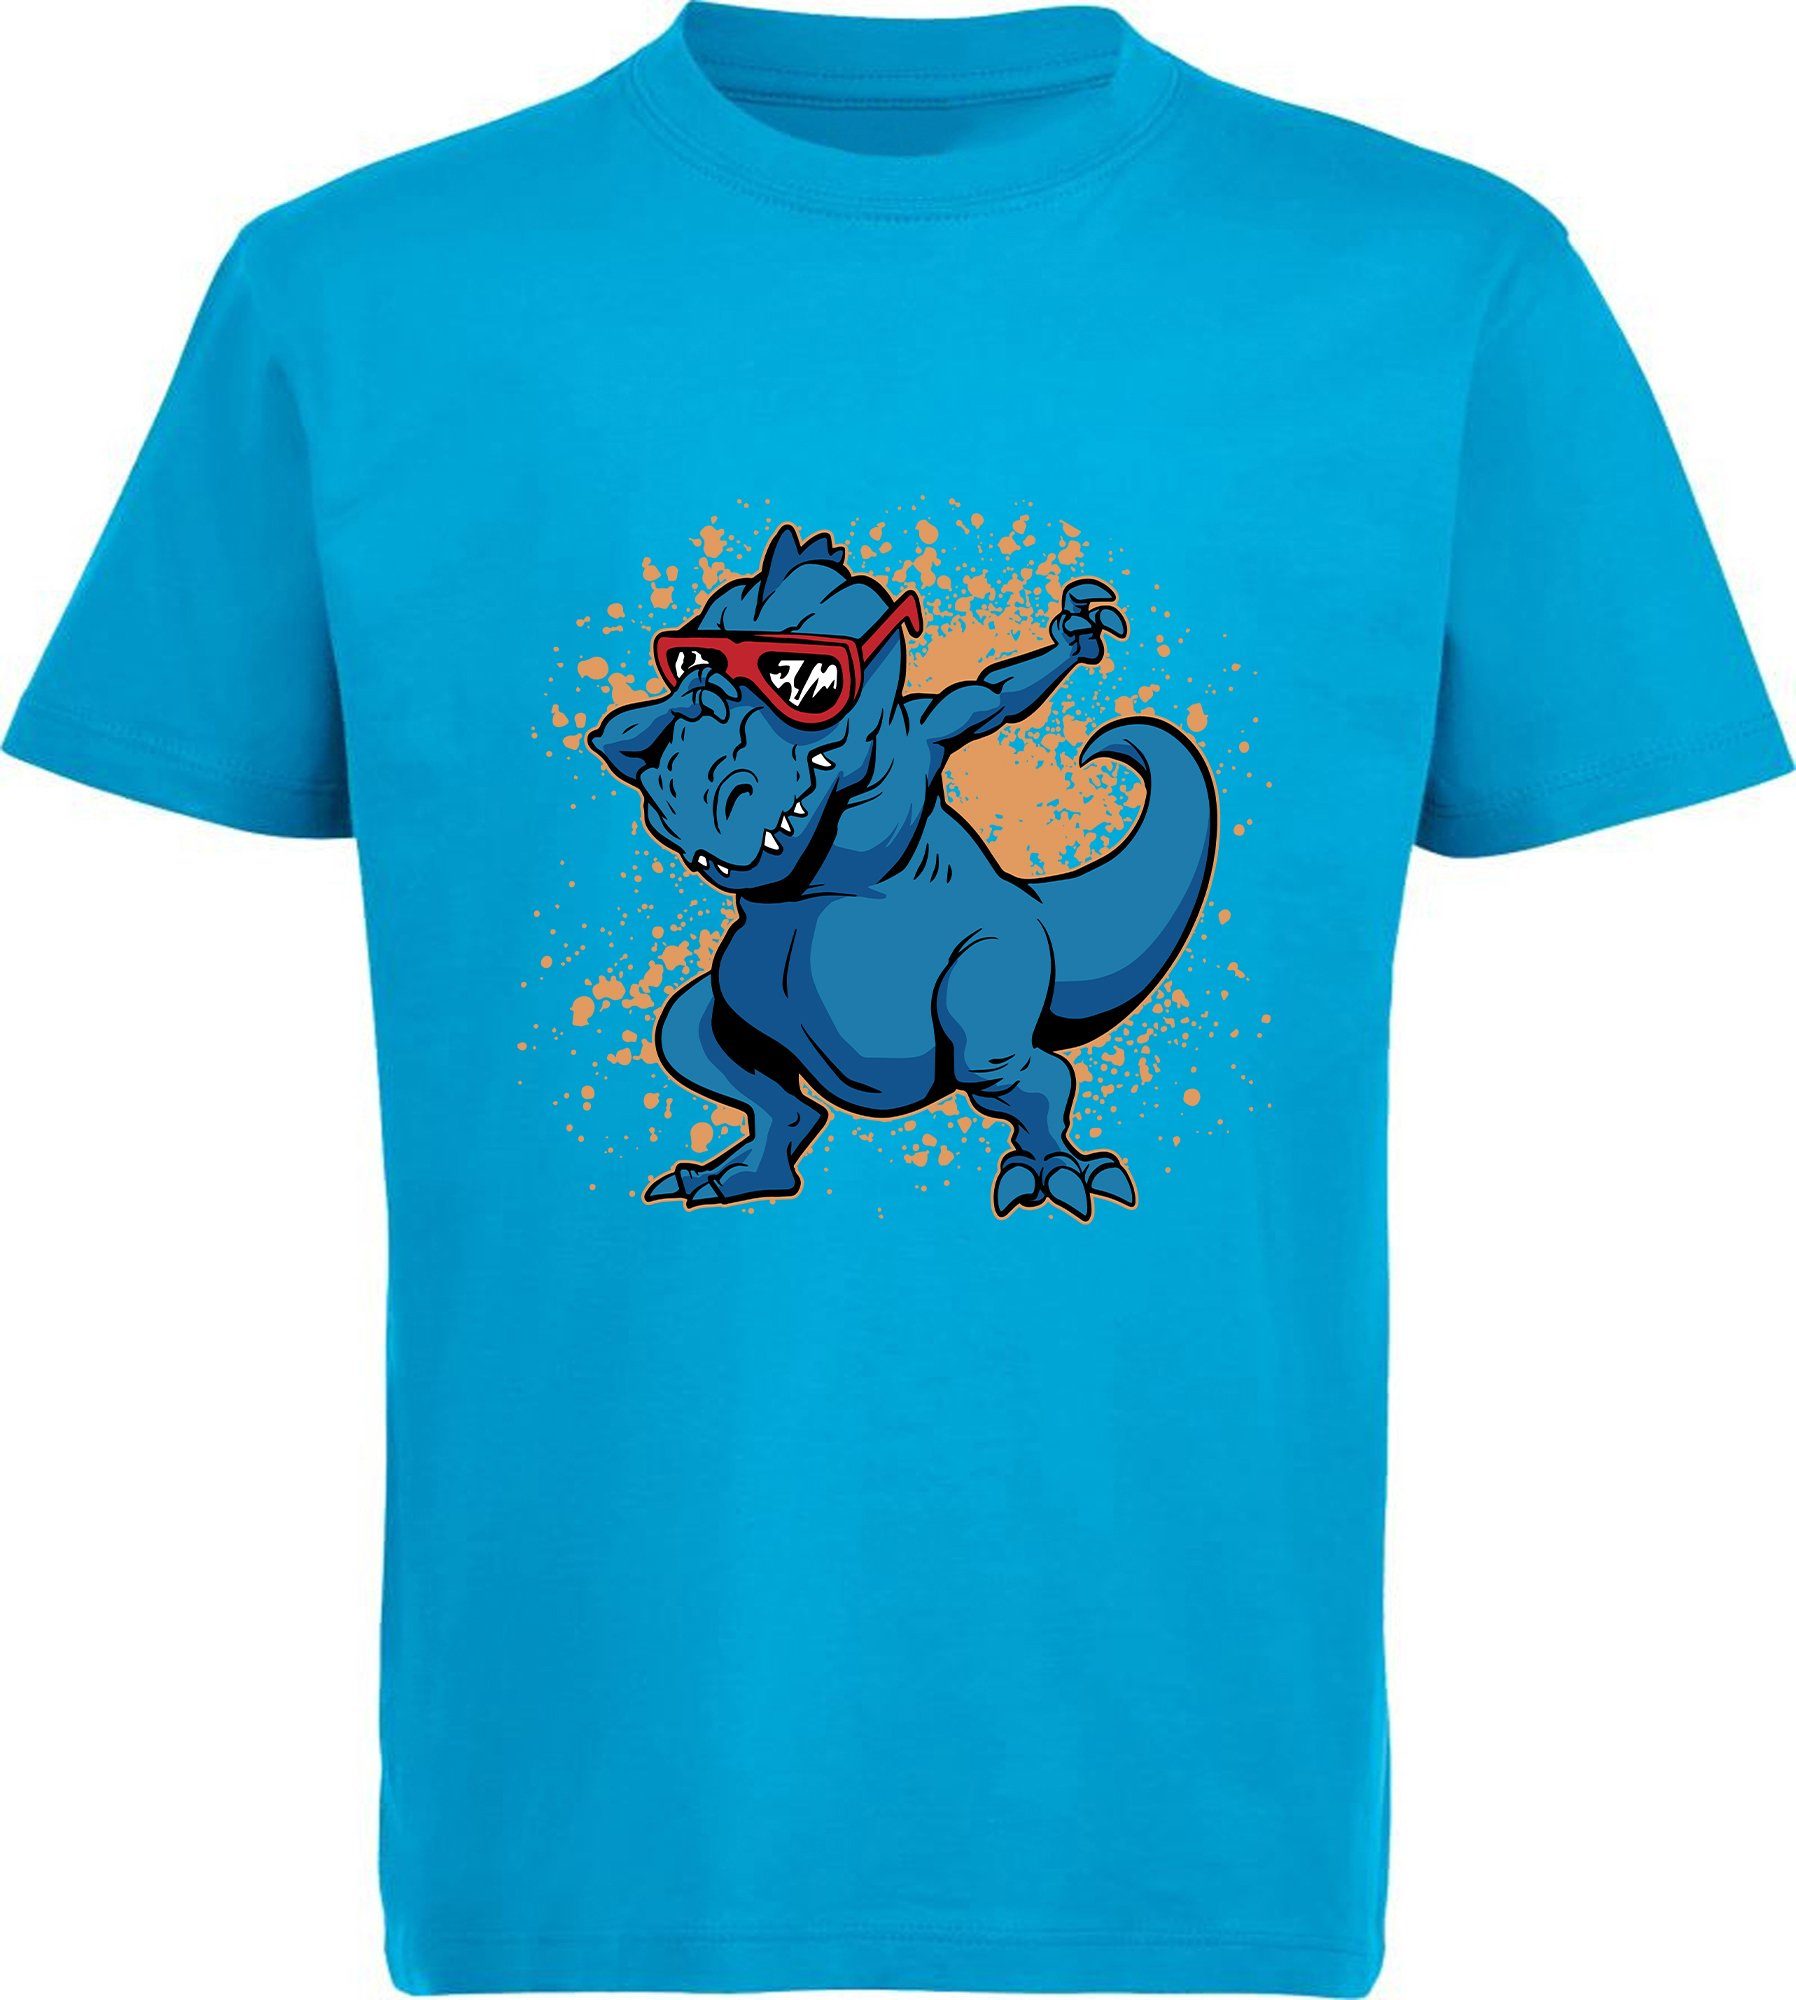 MyDesign24 T-Shirt bedrucktes T-Shirt Brille mit T-Rex mit am 100% i49 aqua Aufdruck, Baumwolle tanzen blau Dino Kinder